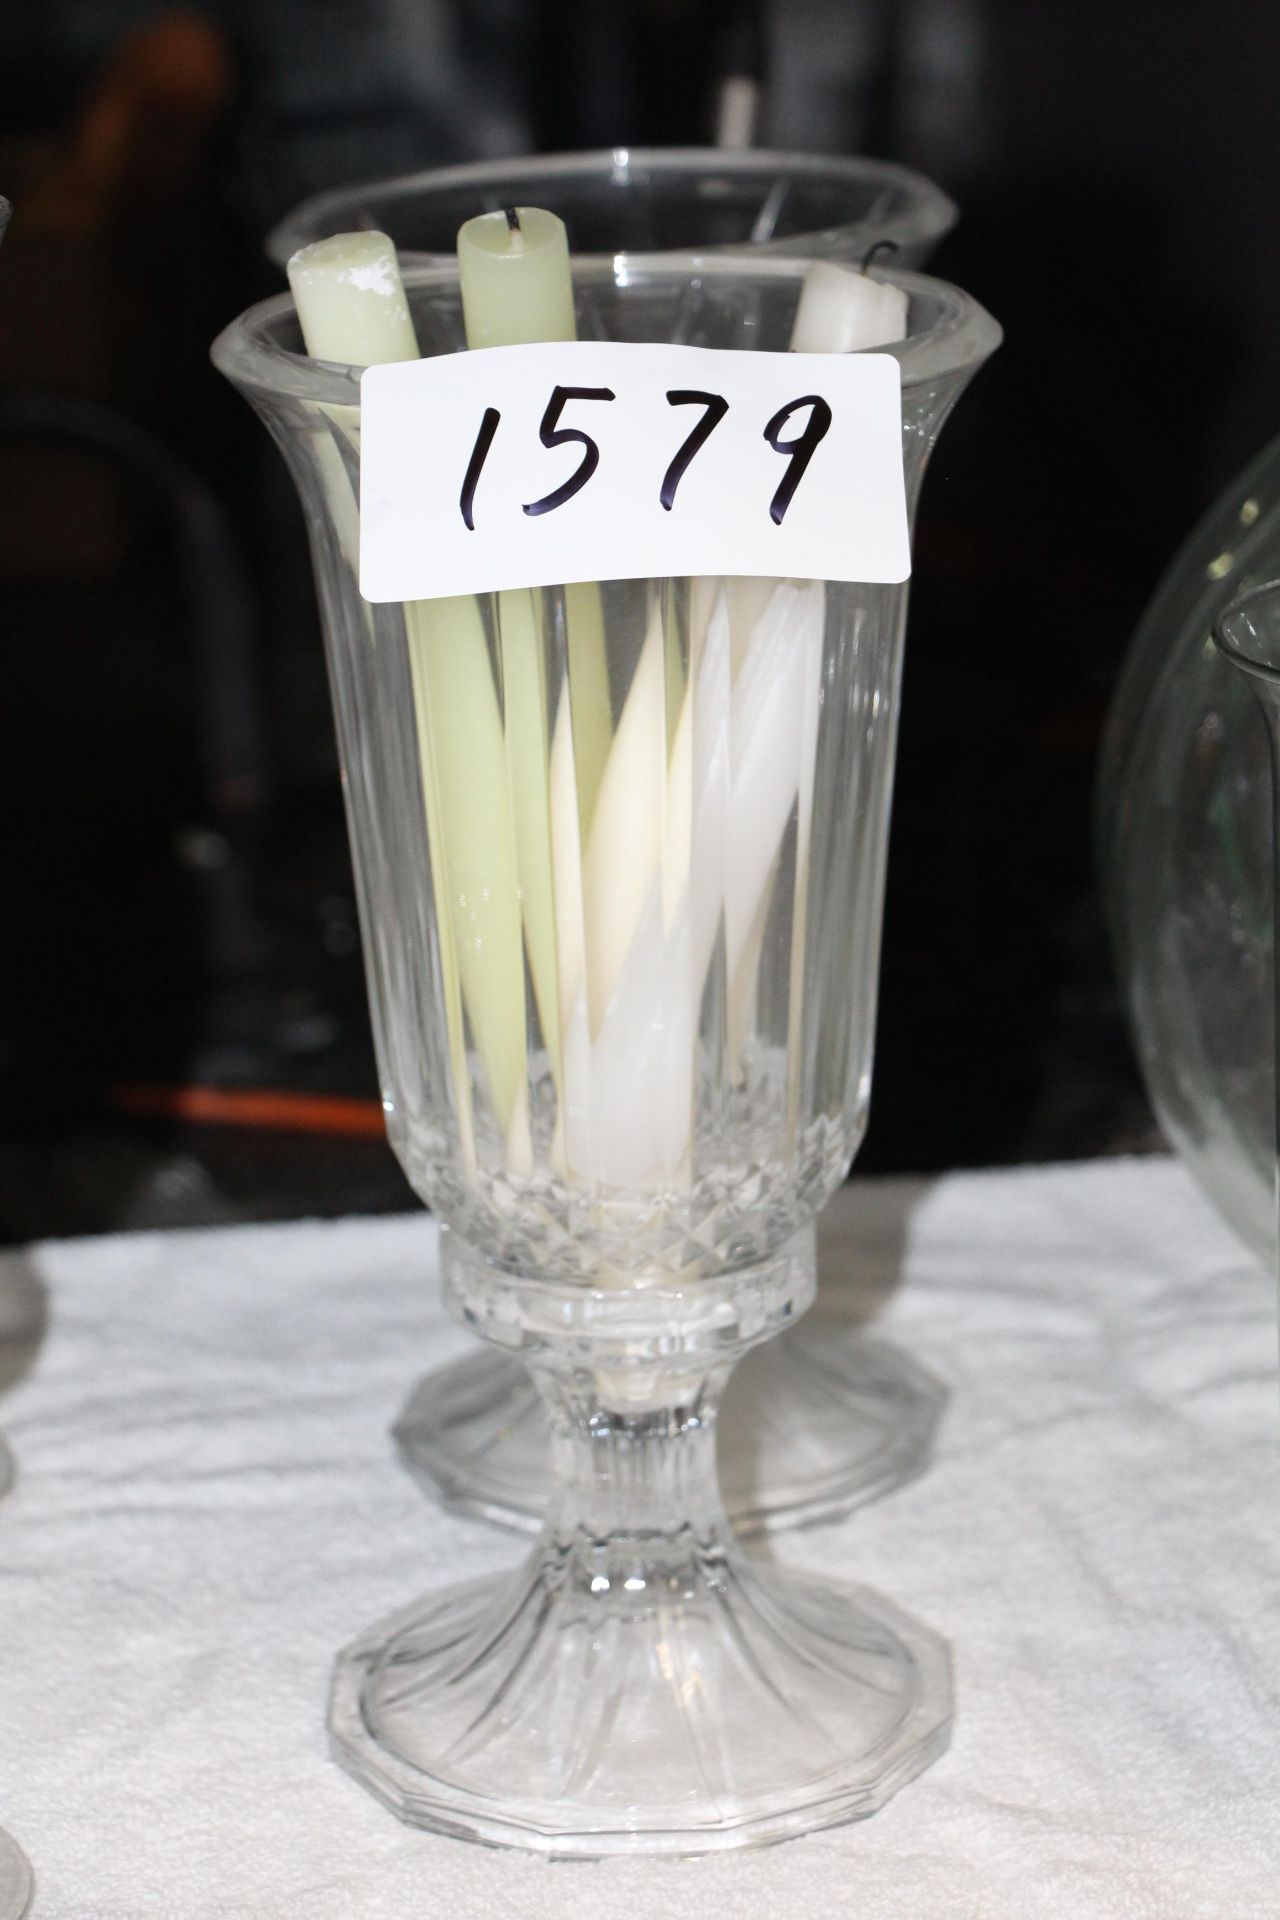 Lot 2 glass short stem candle holder